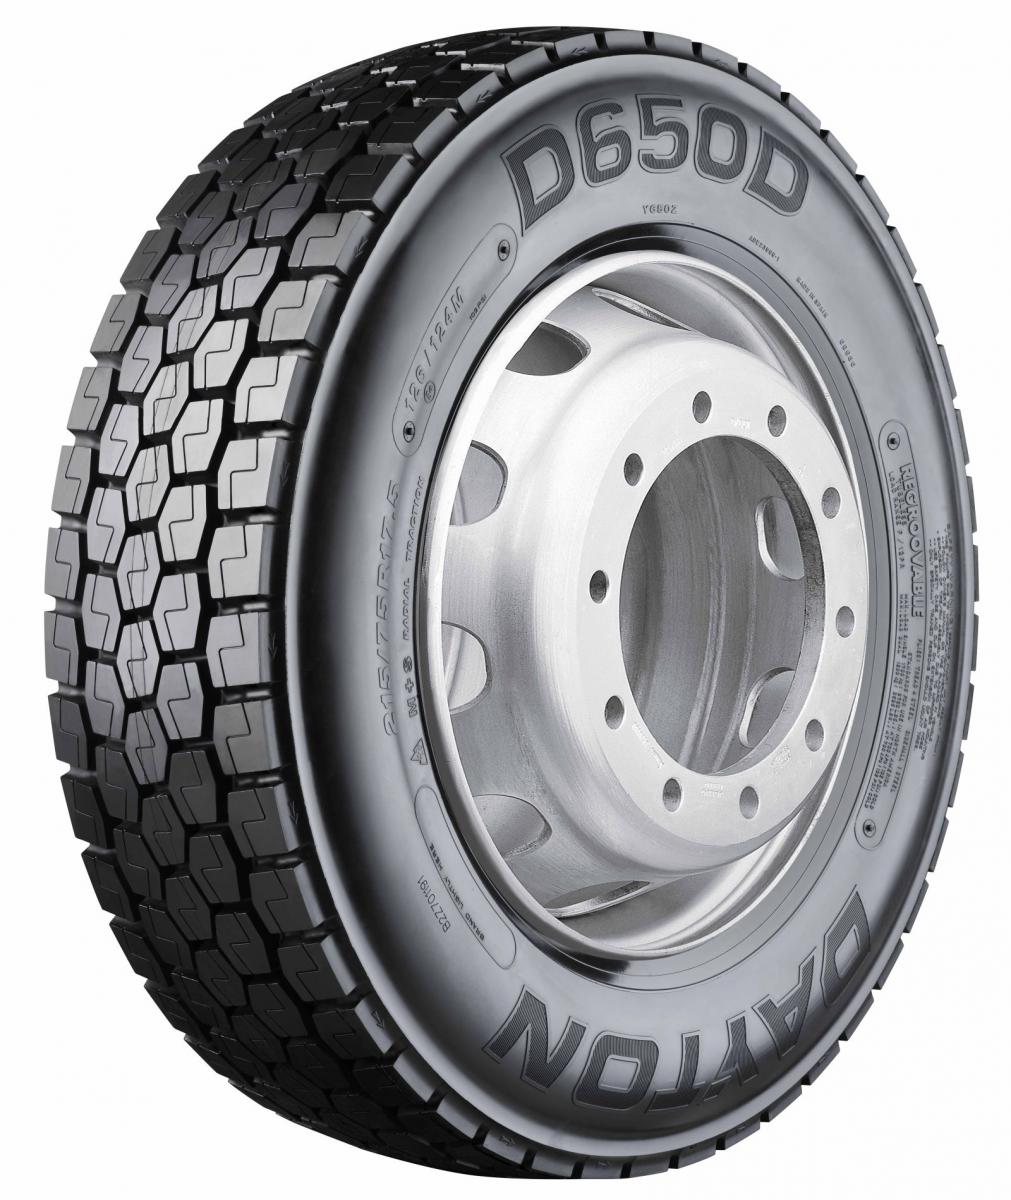 Záběrová pneumatika D650D pro lehká a středně těžká nákladní vozidla 